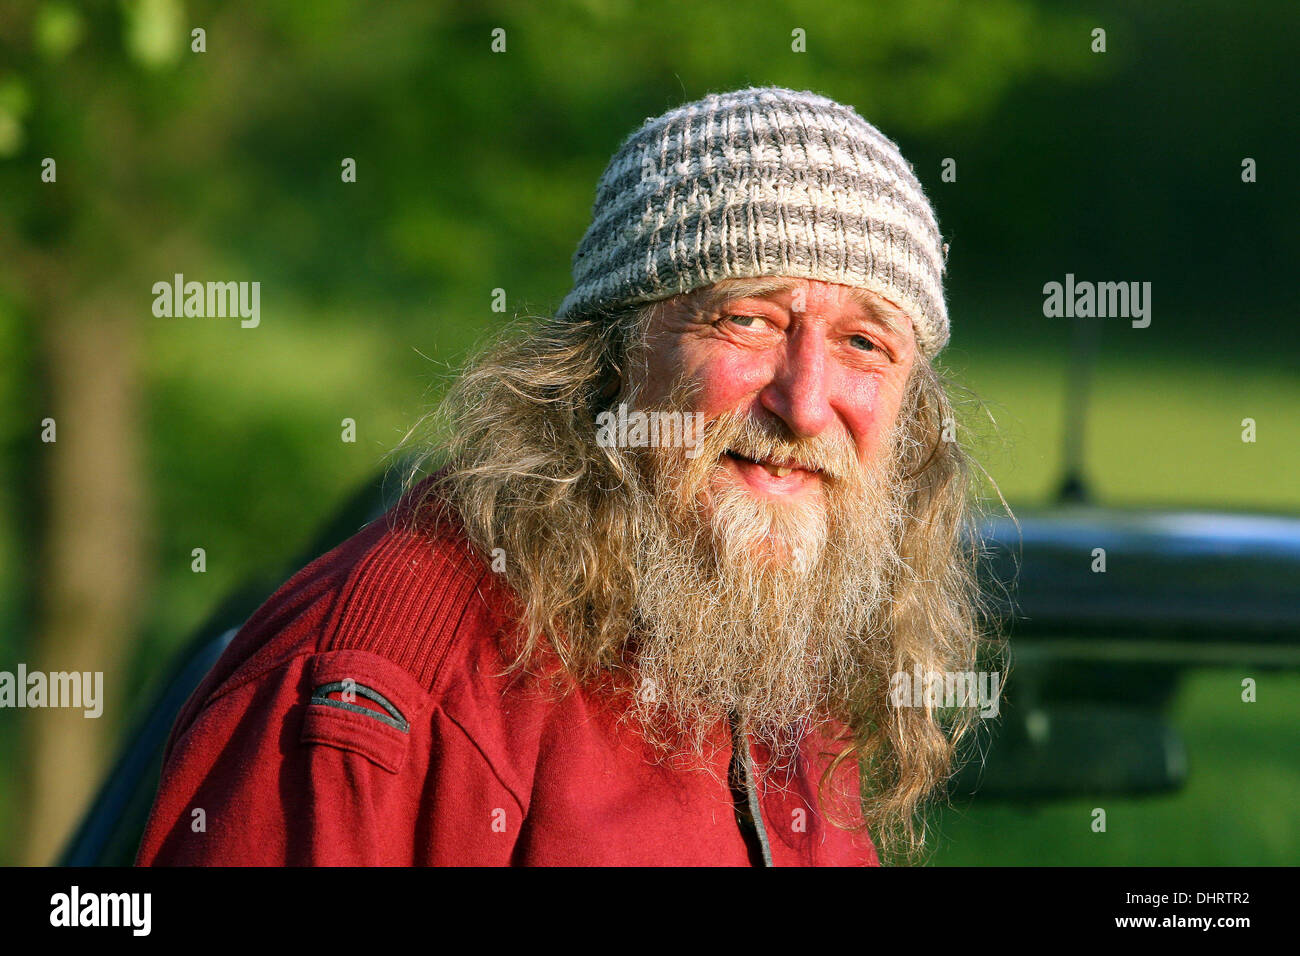 Seniorenportrait Alter Hipster-Mann lange Haare und Bart in einer Mütze,  60er Jahre Stockfotografie - Alamy